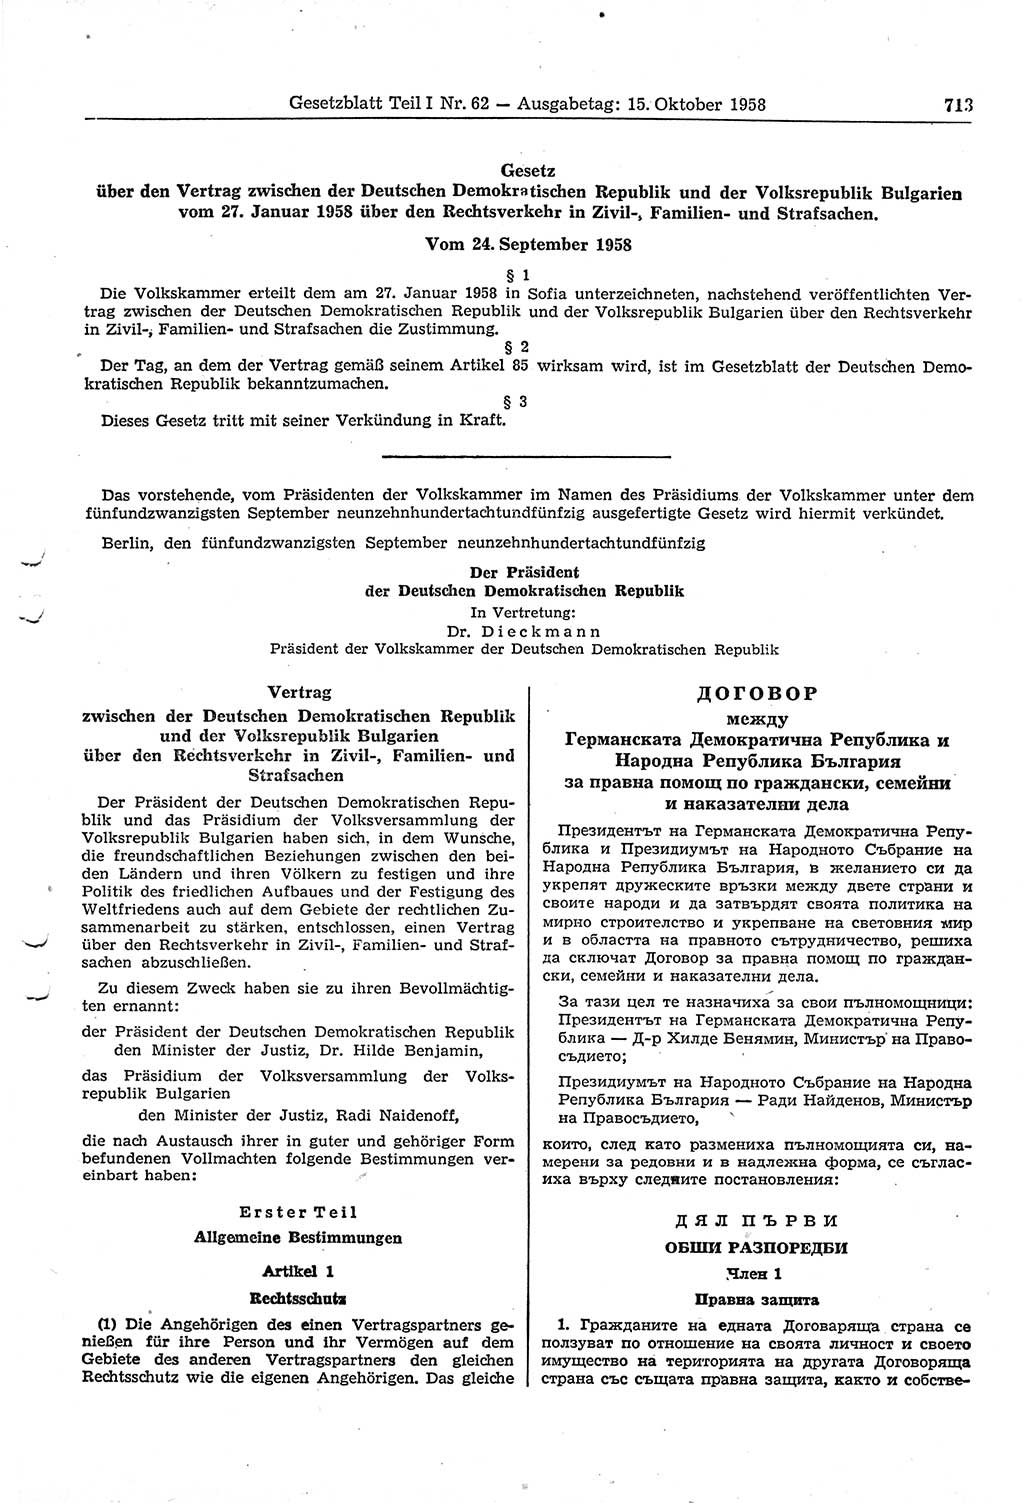 Gesetzblatt (GBl.) der Deutschen Demokratischen Republik (DDR) Teil Ⅰ 1958, Seite 713 (GBl. DDR Ⅰ 1958, S. 713)